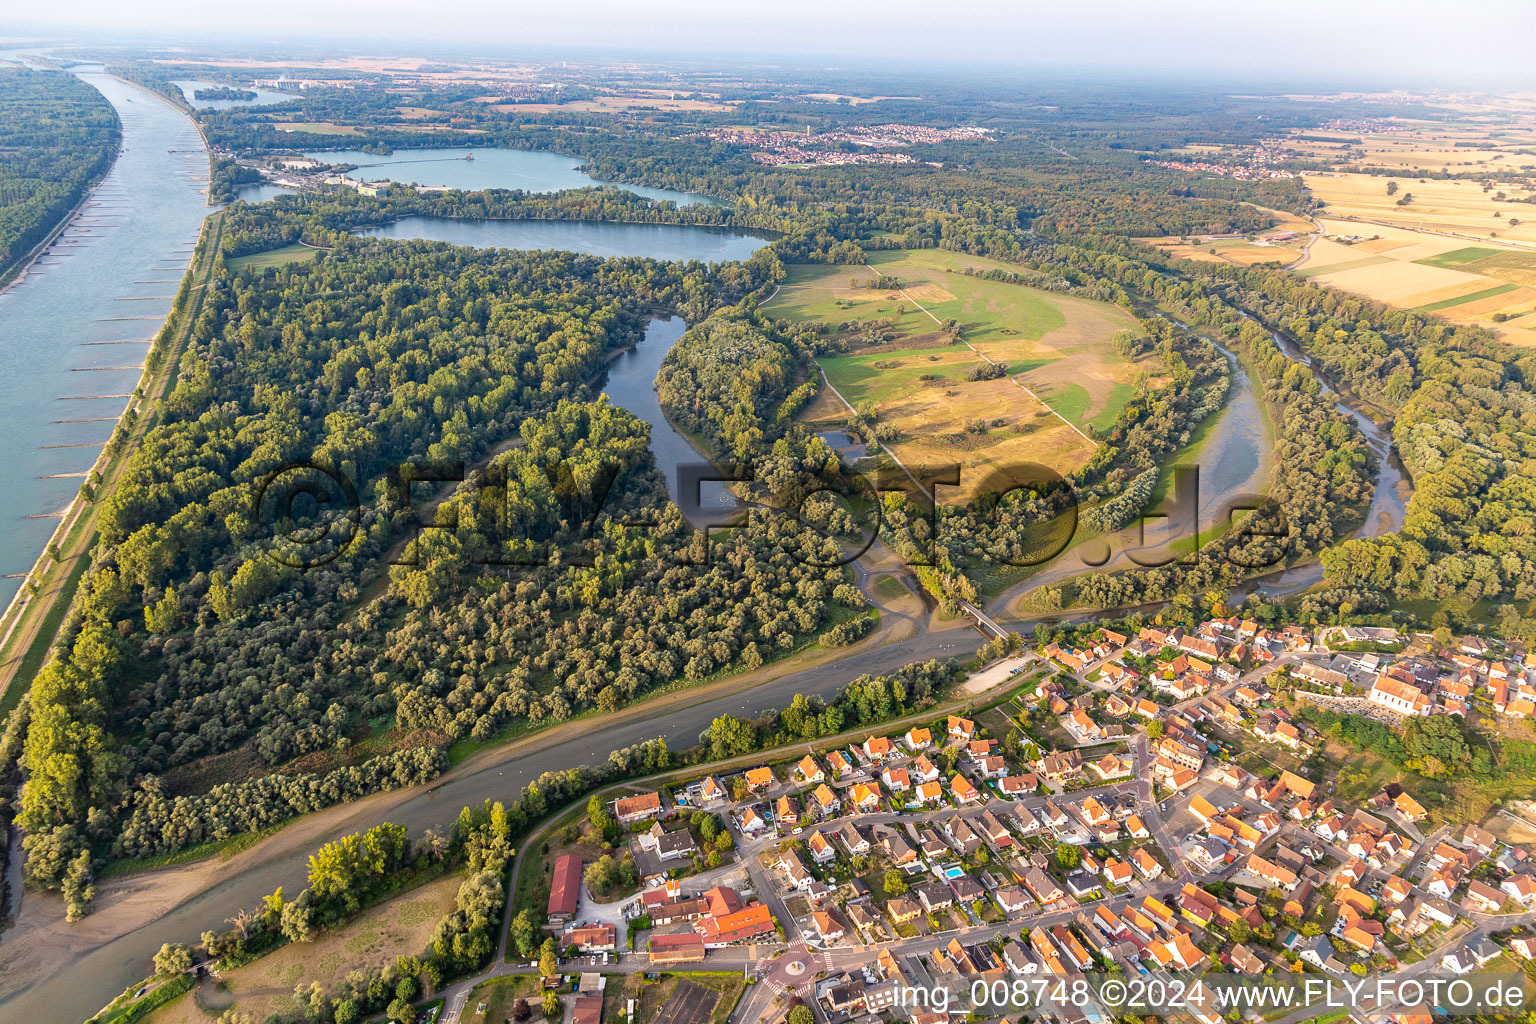 Vue aérienne de Réserve naturelle du delta de la Sûre à Munchhausen dans le département Bas Rhin, France